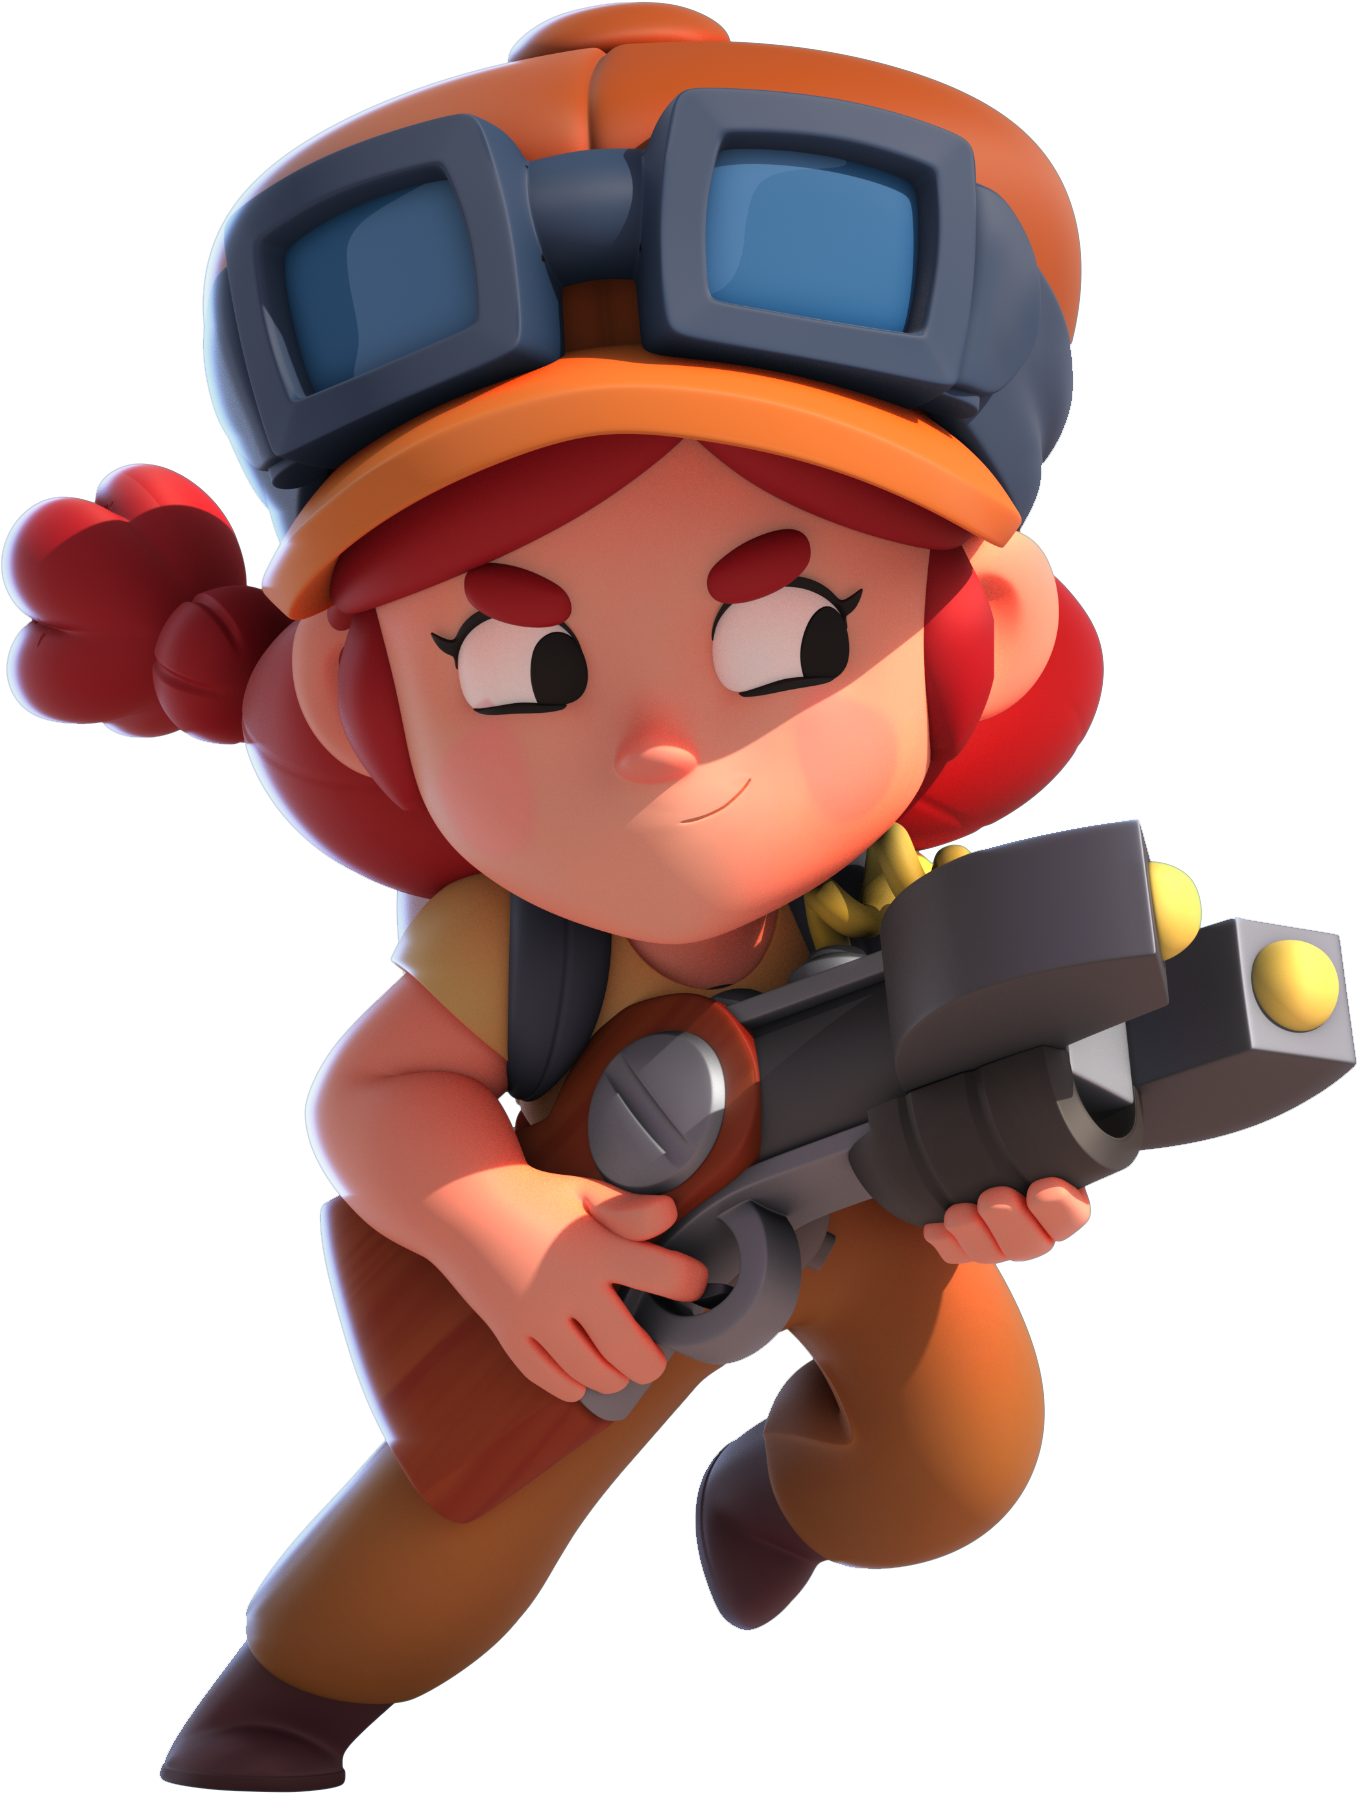 Cartoon Character Holding A Gun